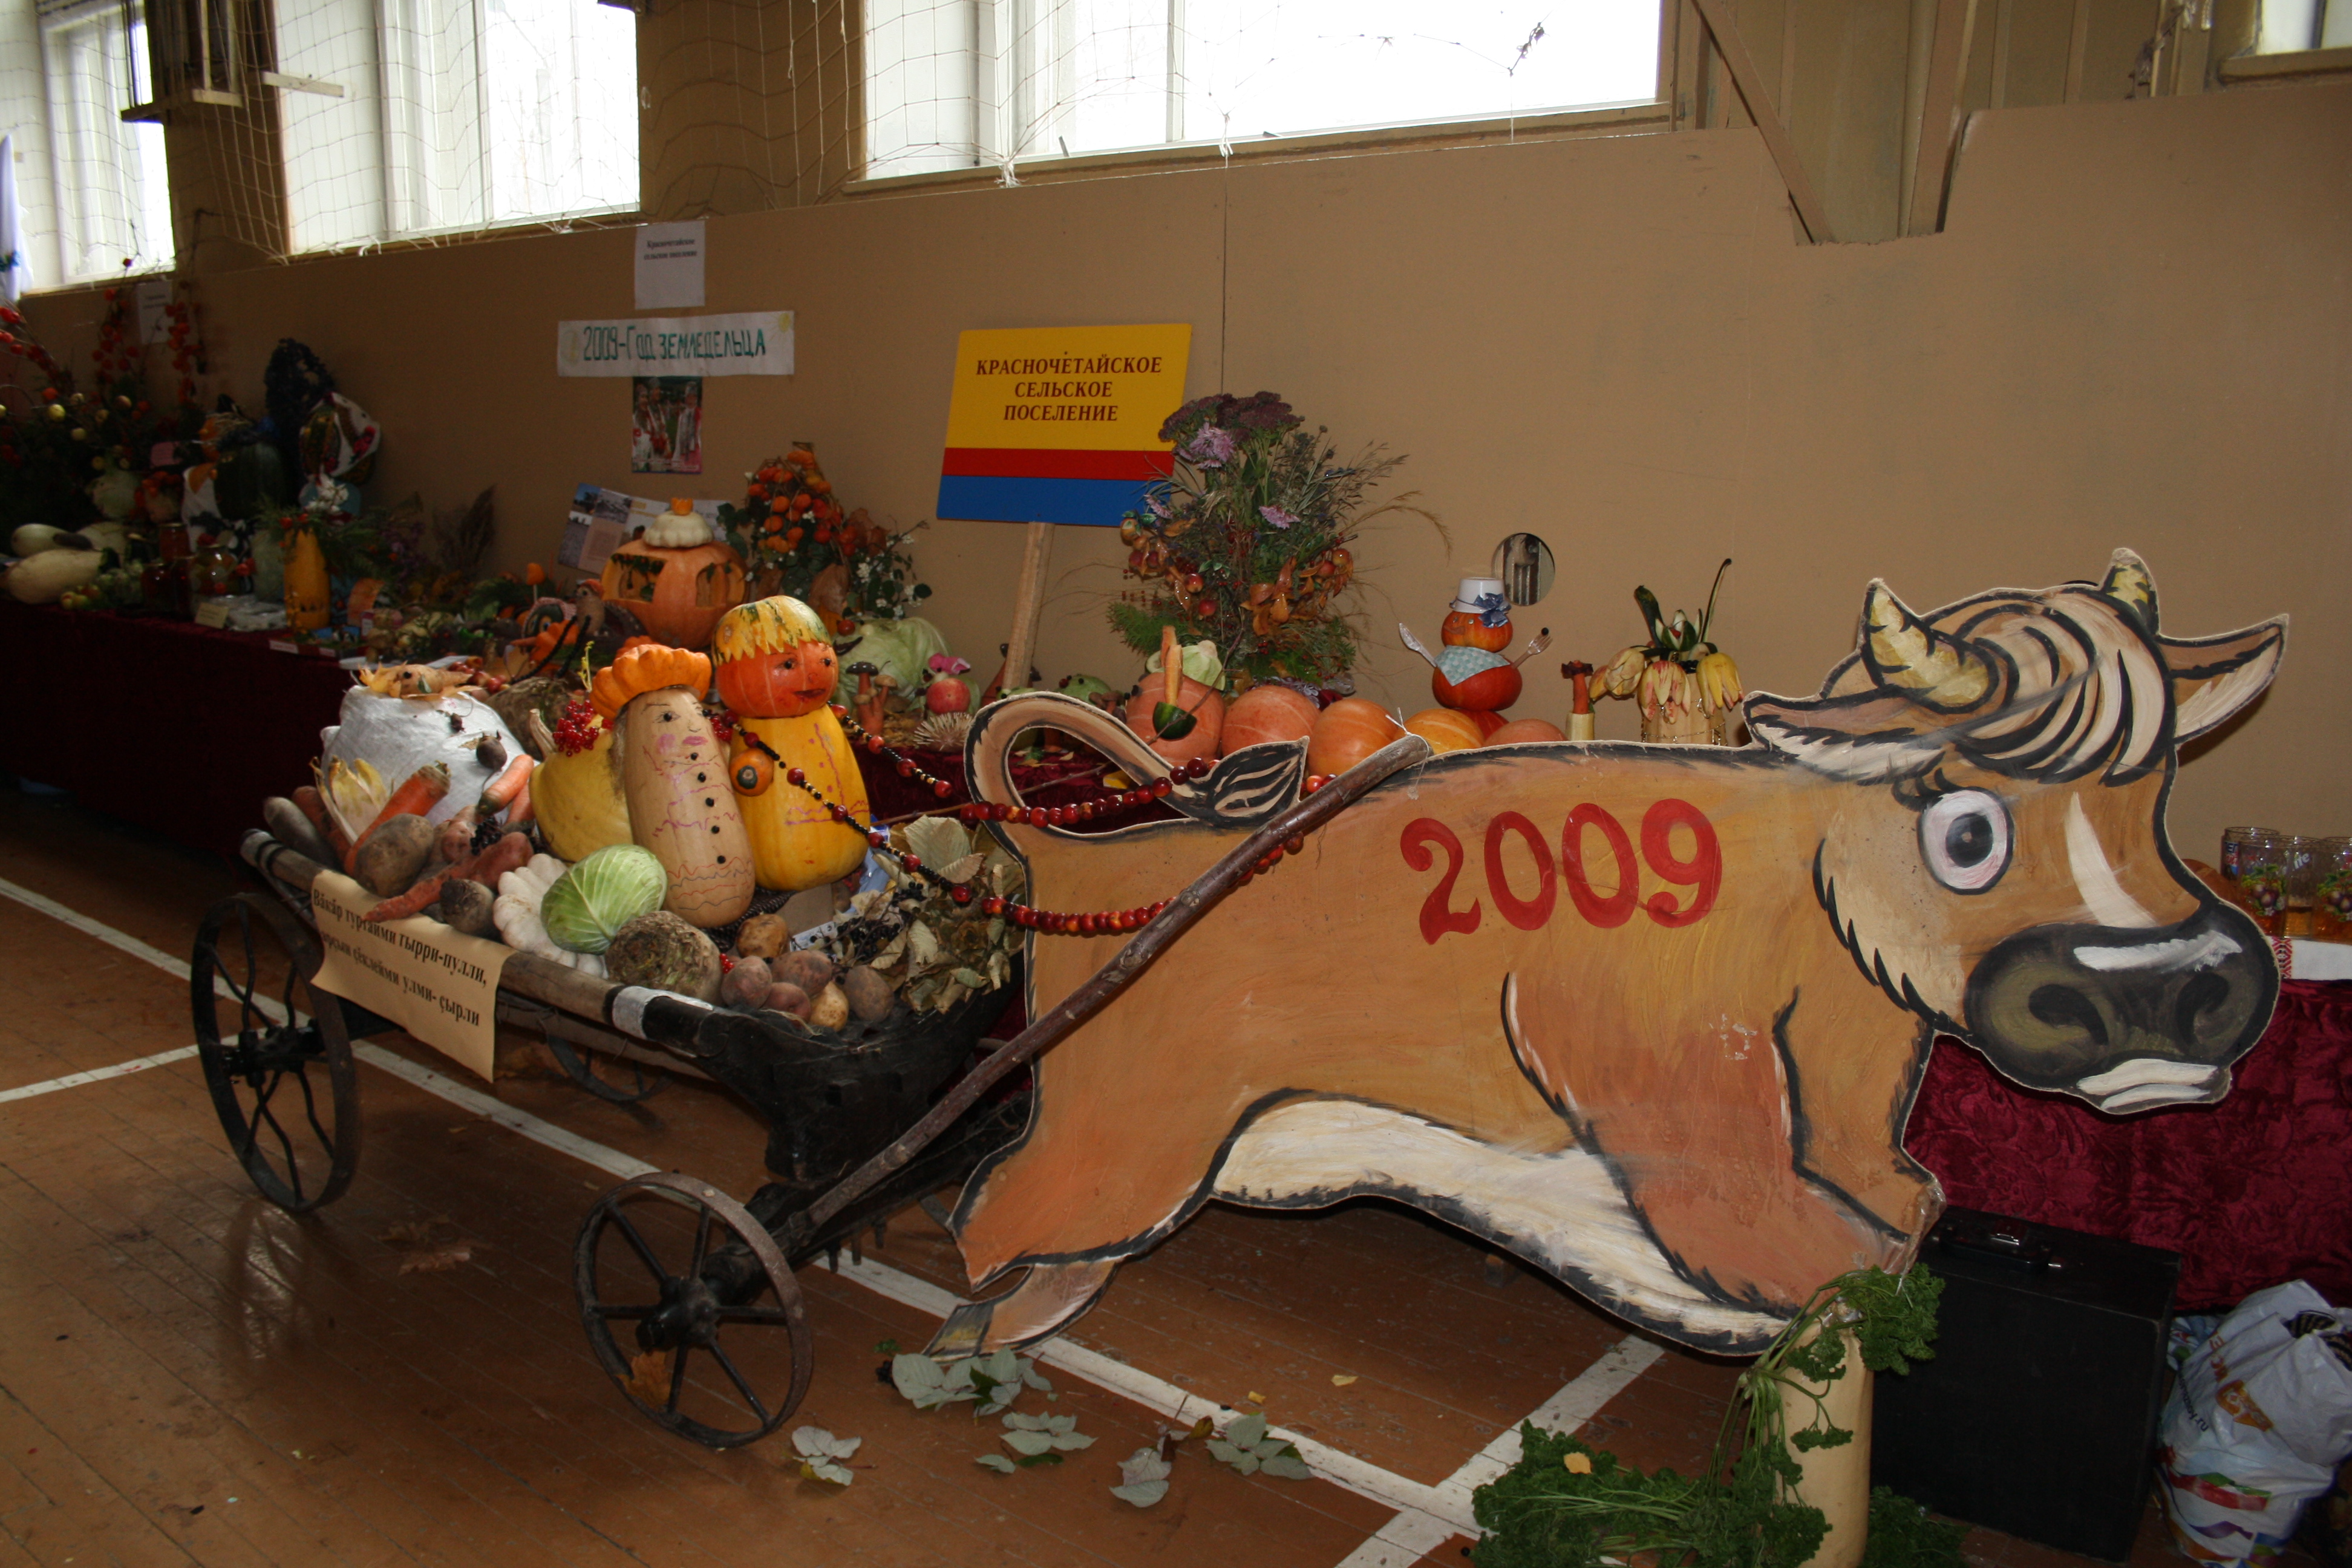 14:20 Праздник "Урожай-2009" открыла выставка сельскохозяйственной продукции  "Дары осени"